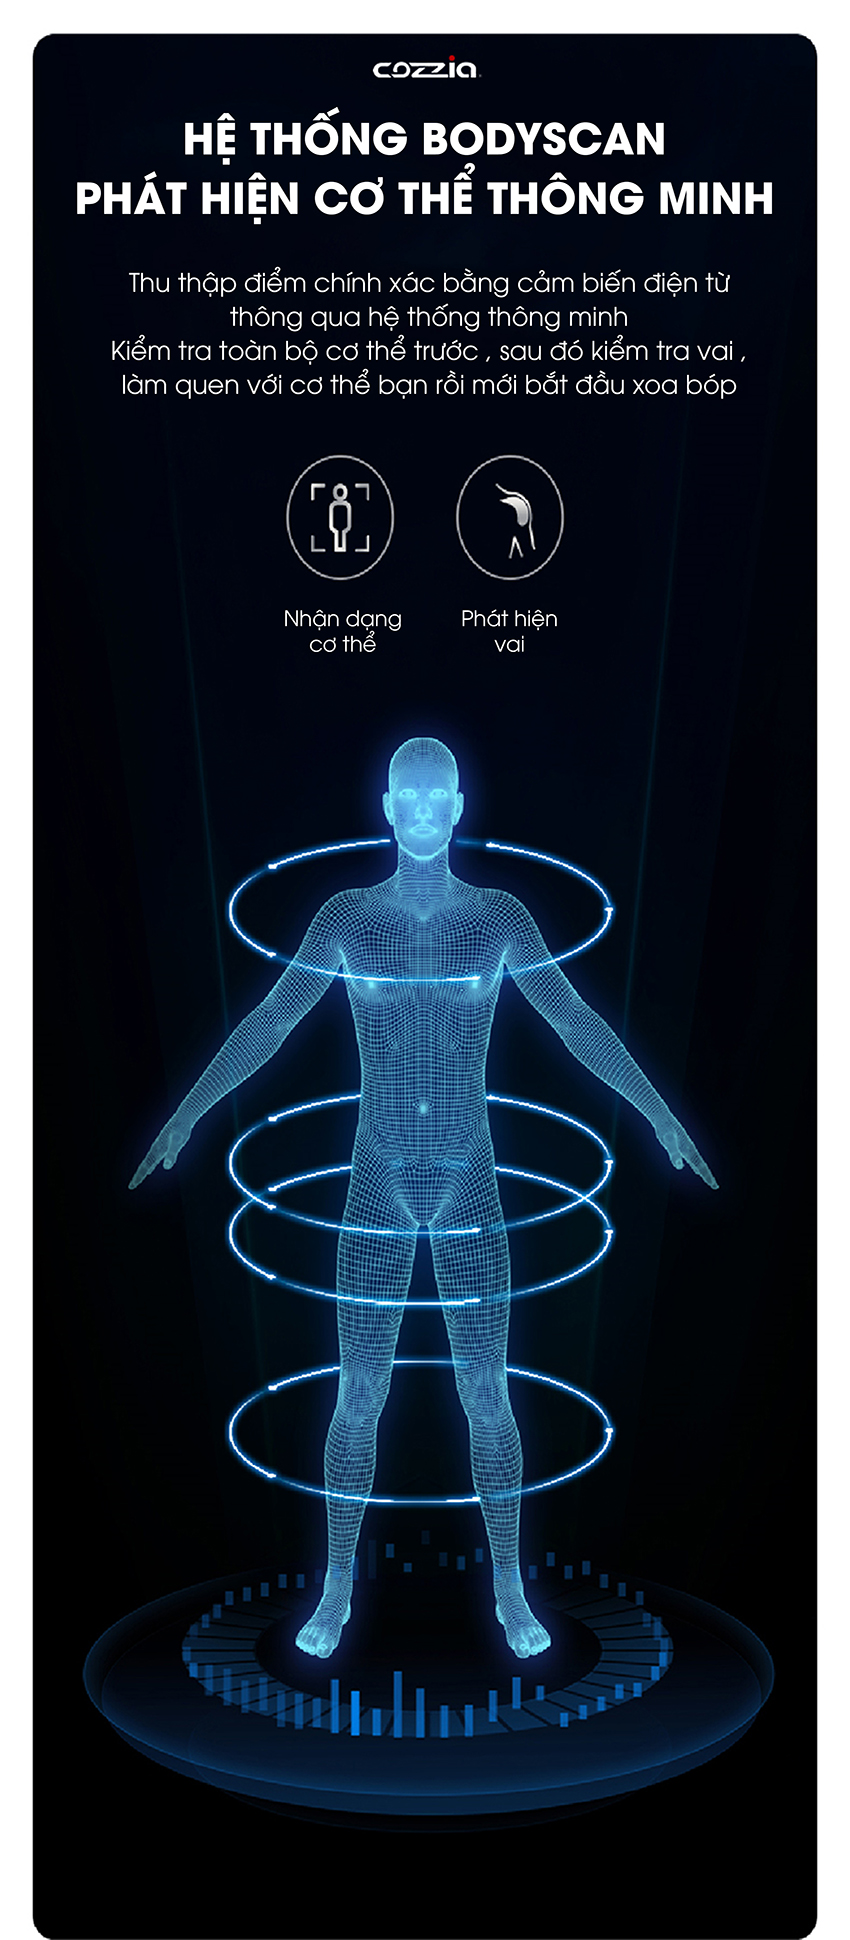 Chức măng body scan giúp phù hợp với từng thể trạng từng người